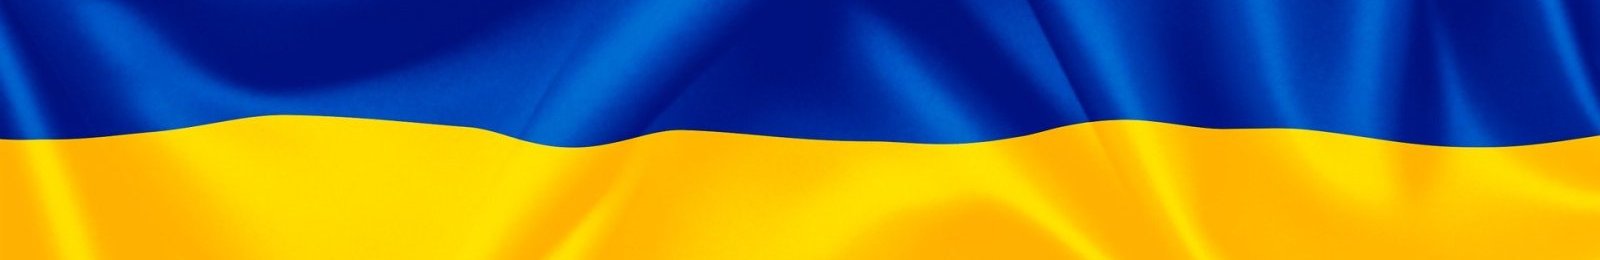 Ouverture d’un centre de stockage départemental pour l’Ukraine